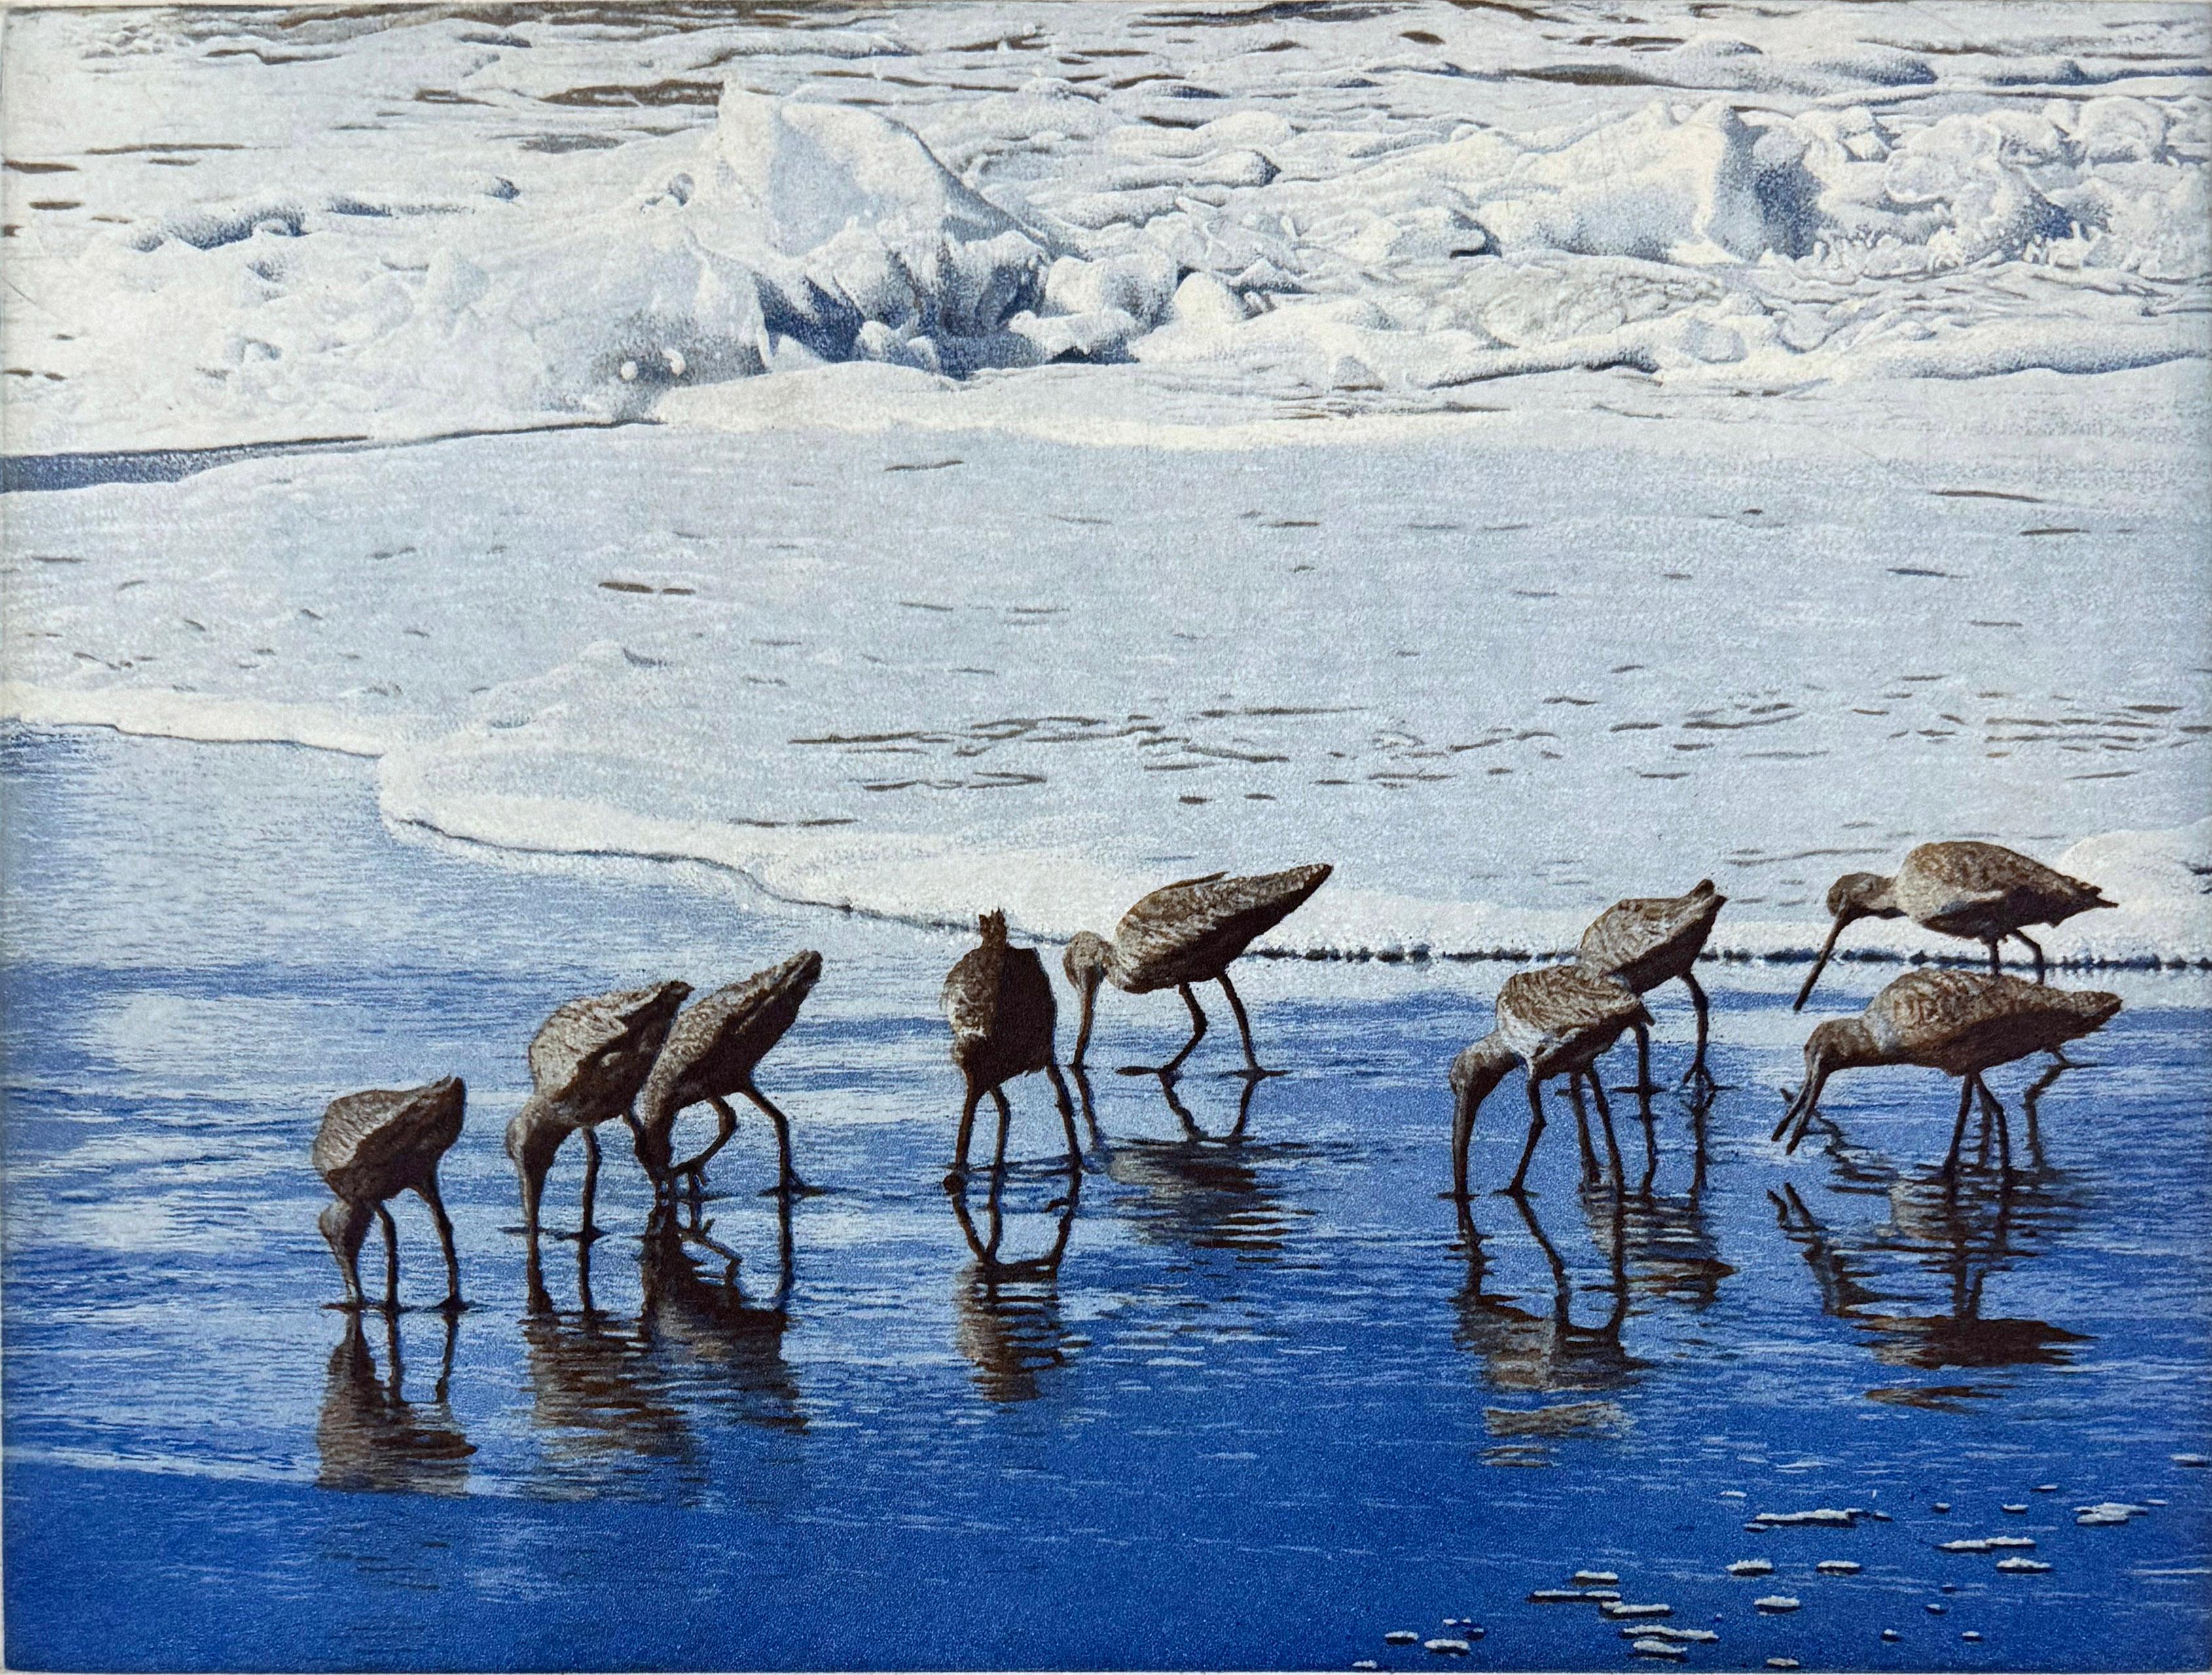 Médium : eau-forte et aquatinte
Edition de 100
Année : 2015
Taille de l'image : 9 x 12 pouces
Signé, titré et numéroté par l'artiste.

Inspiré par une scène de sept oies canadiennes dans le lac Padden, Bellingham, WA. C'est un exemple parfait du